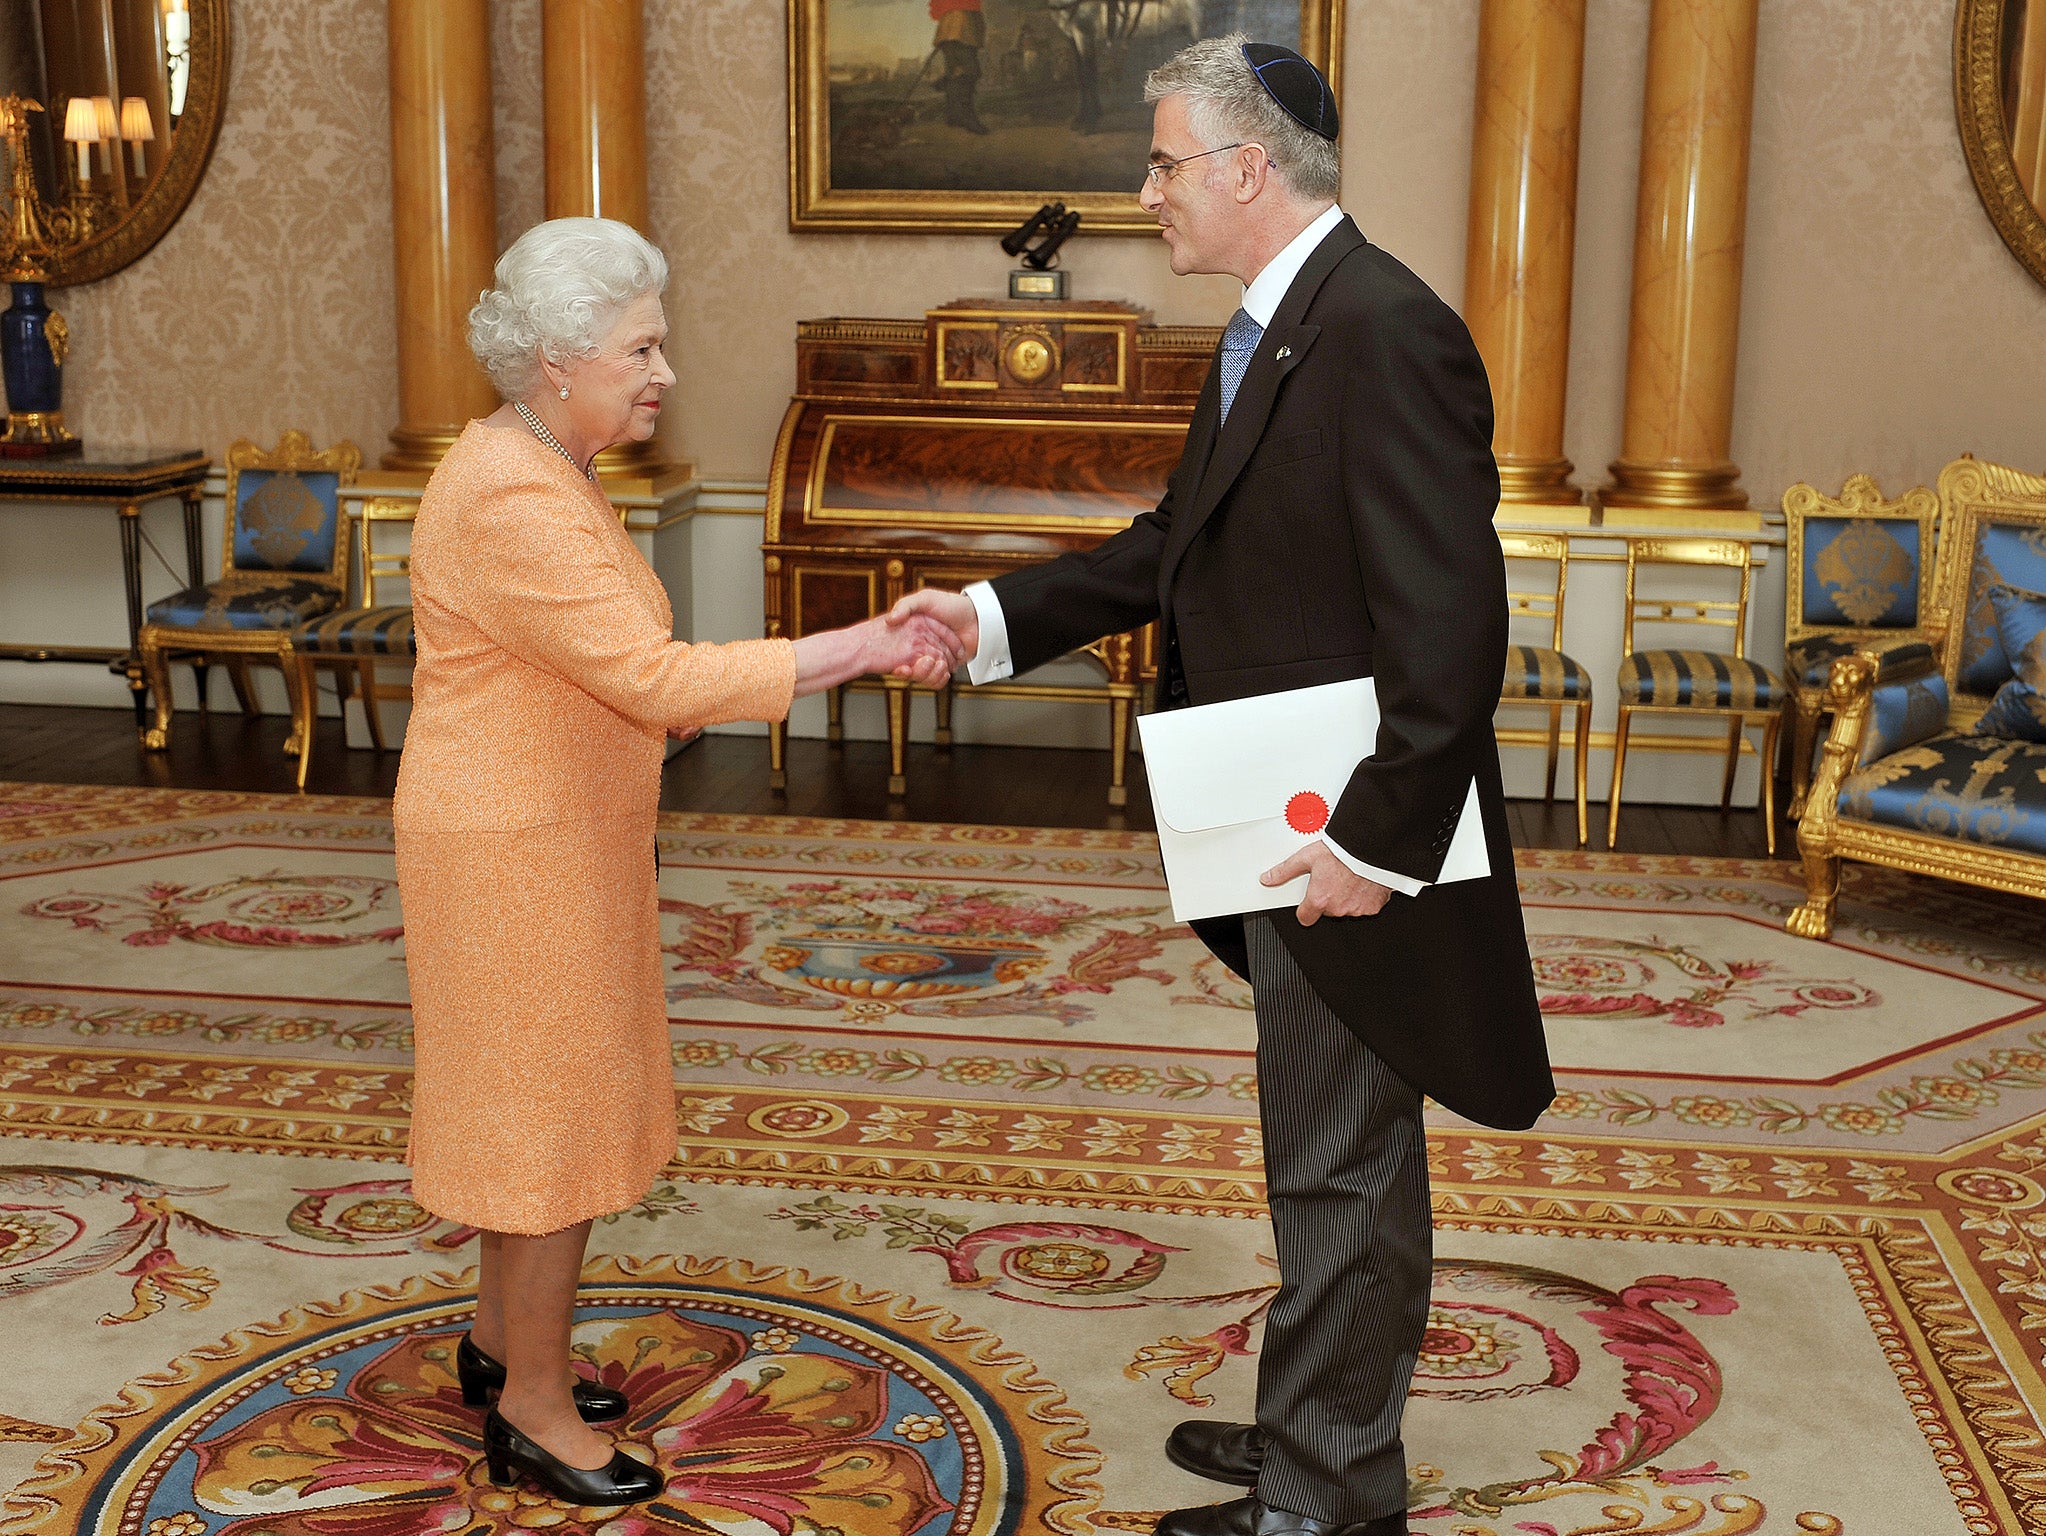 Queen Elizabeth II shakes hands with the ambassador of Israel Daniel Taub in 2011